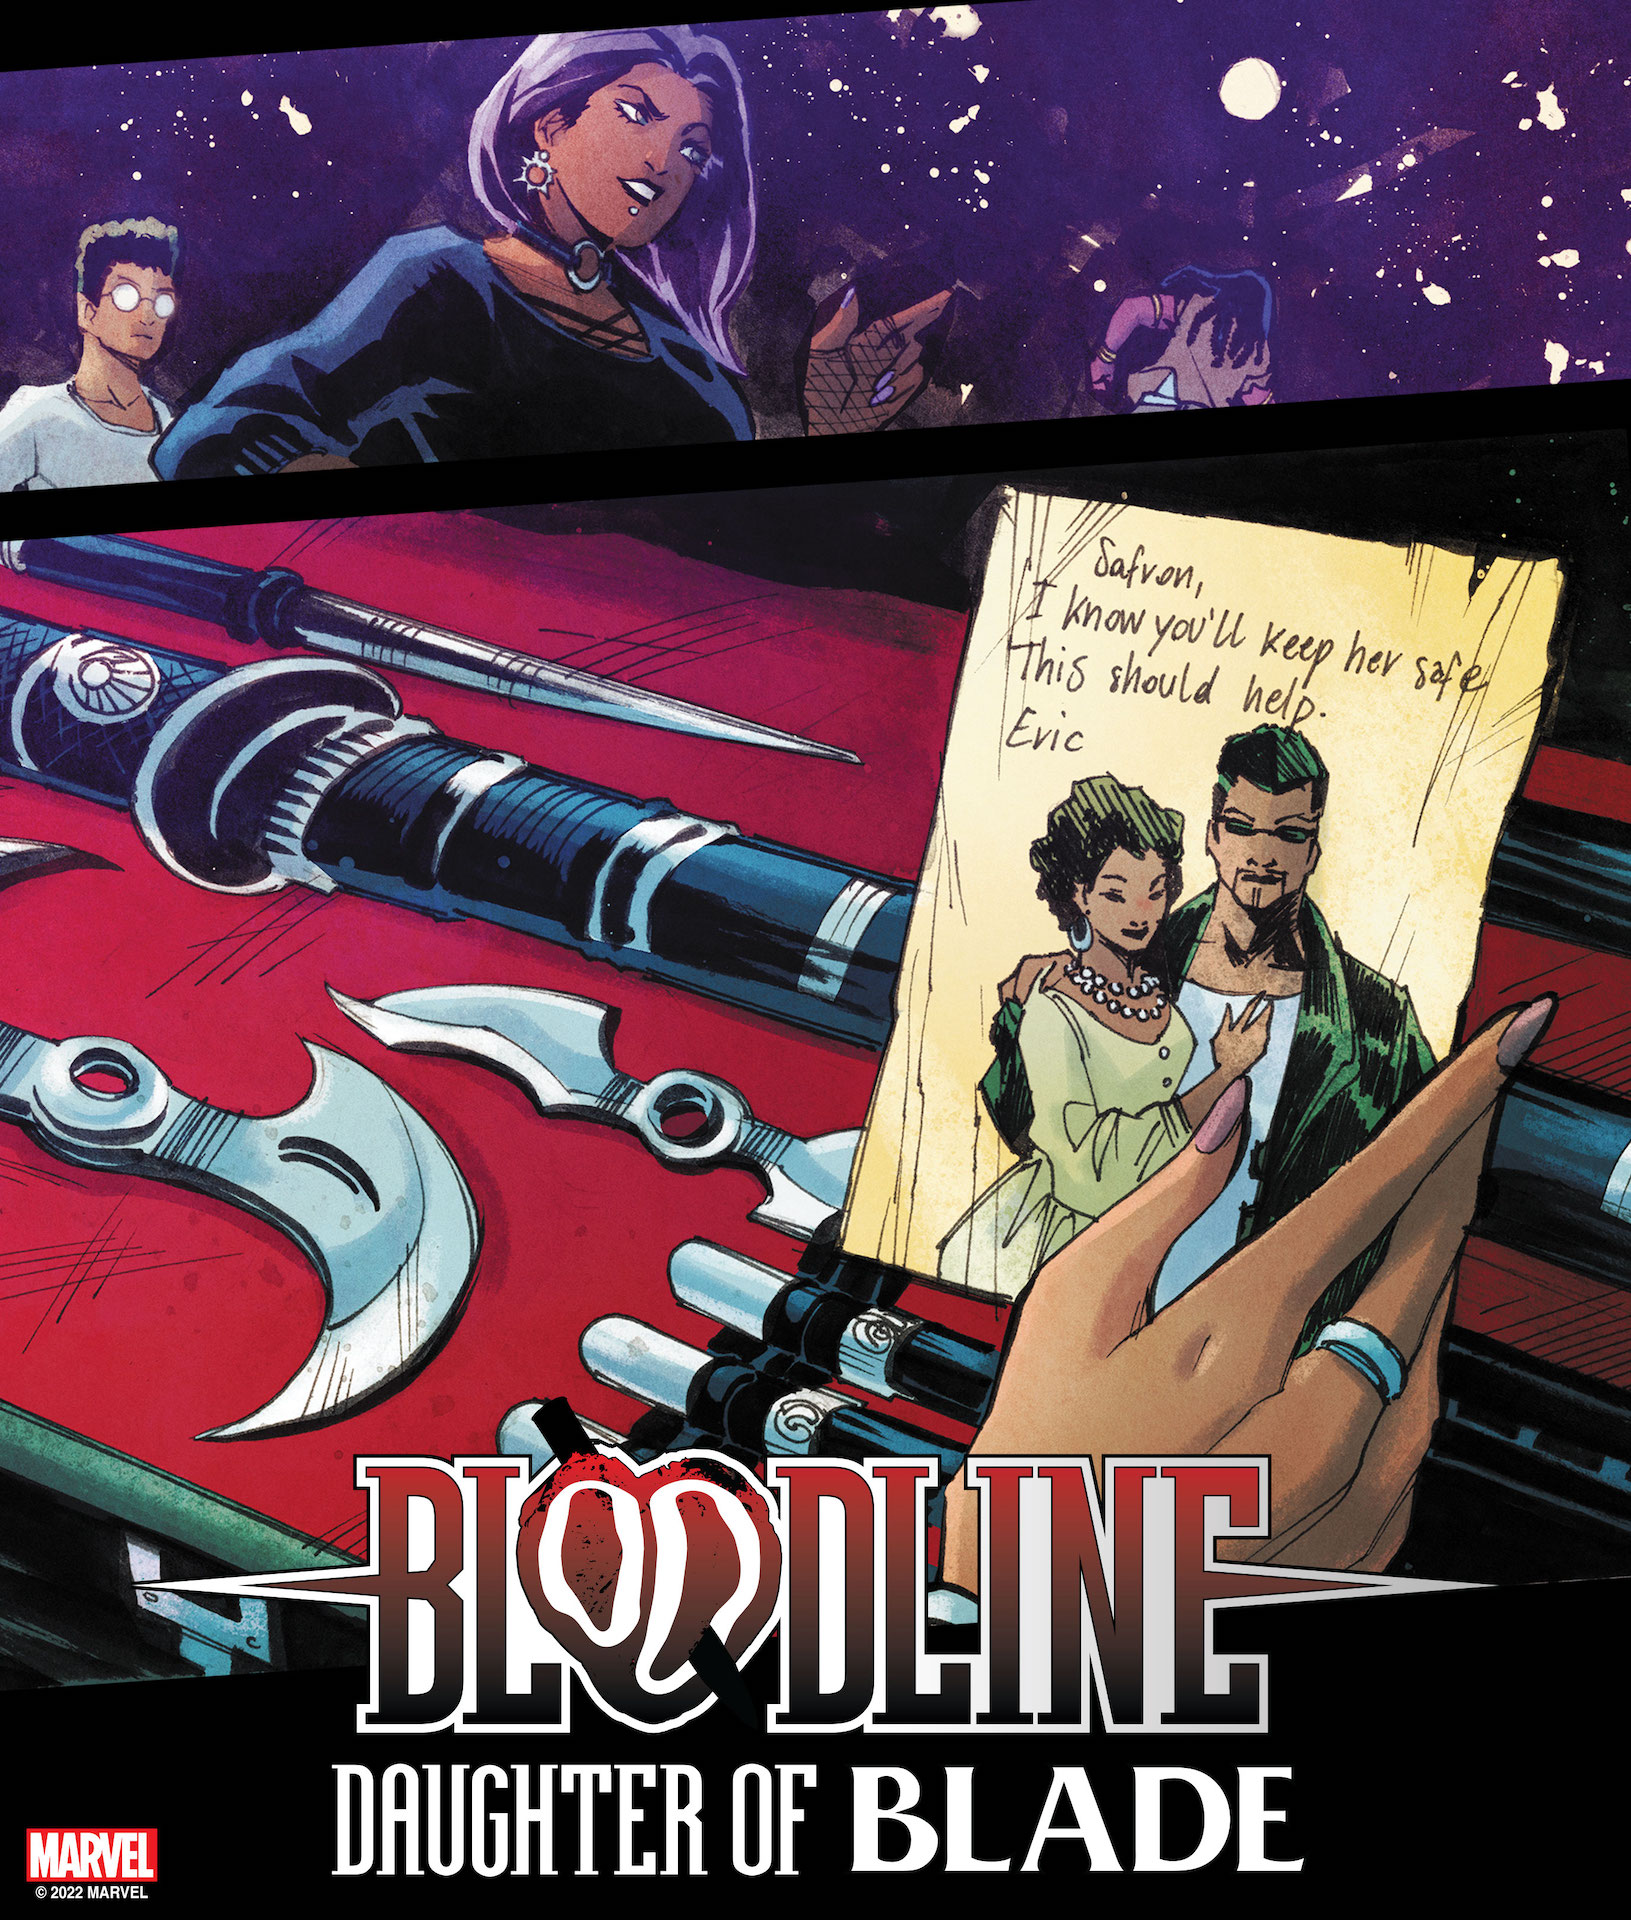 Marvel teases debut of daughter of Blade, Bloodline